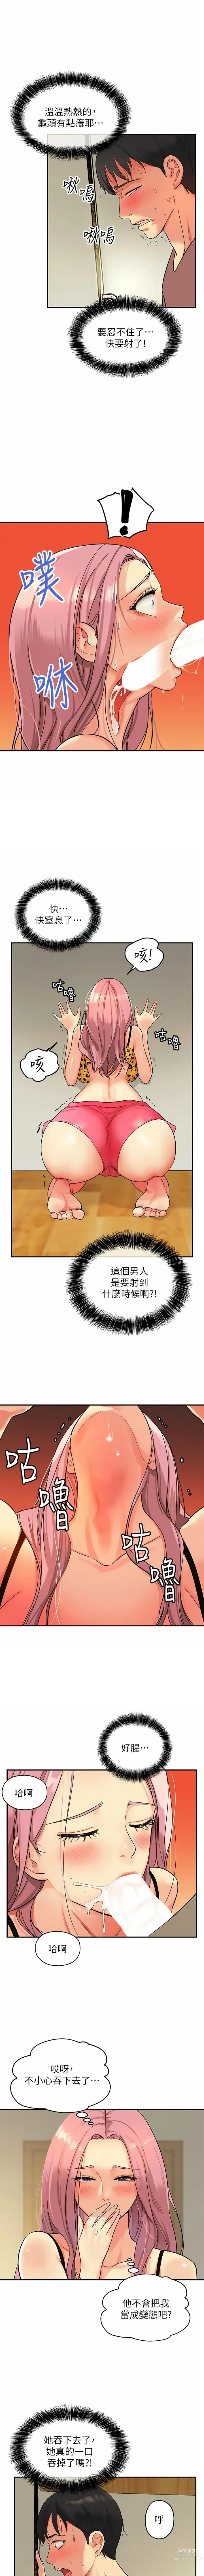 Page 29 of manga 洞洞杂货铺/Glory Hole Shop 1-71